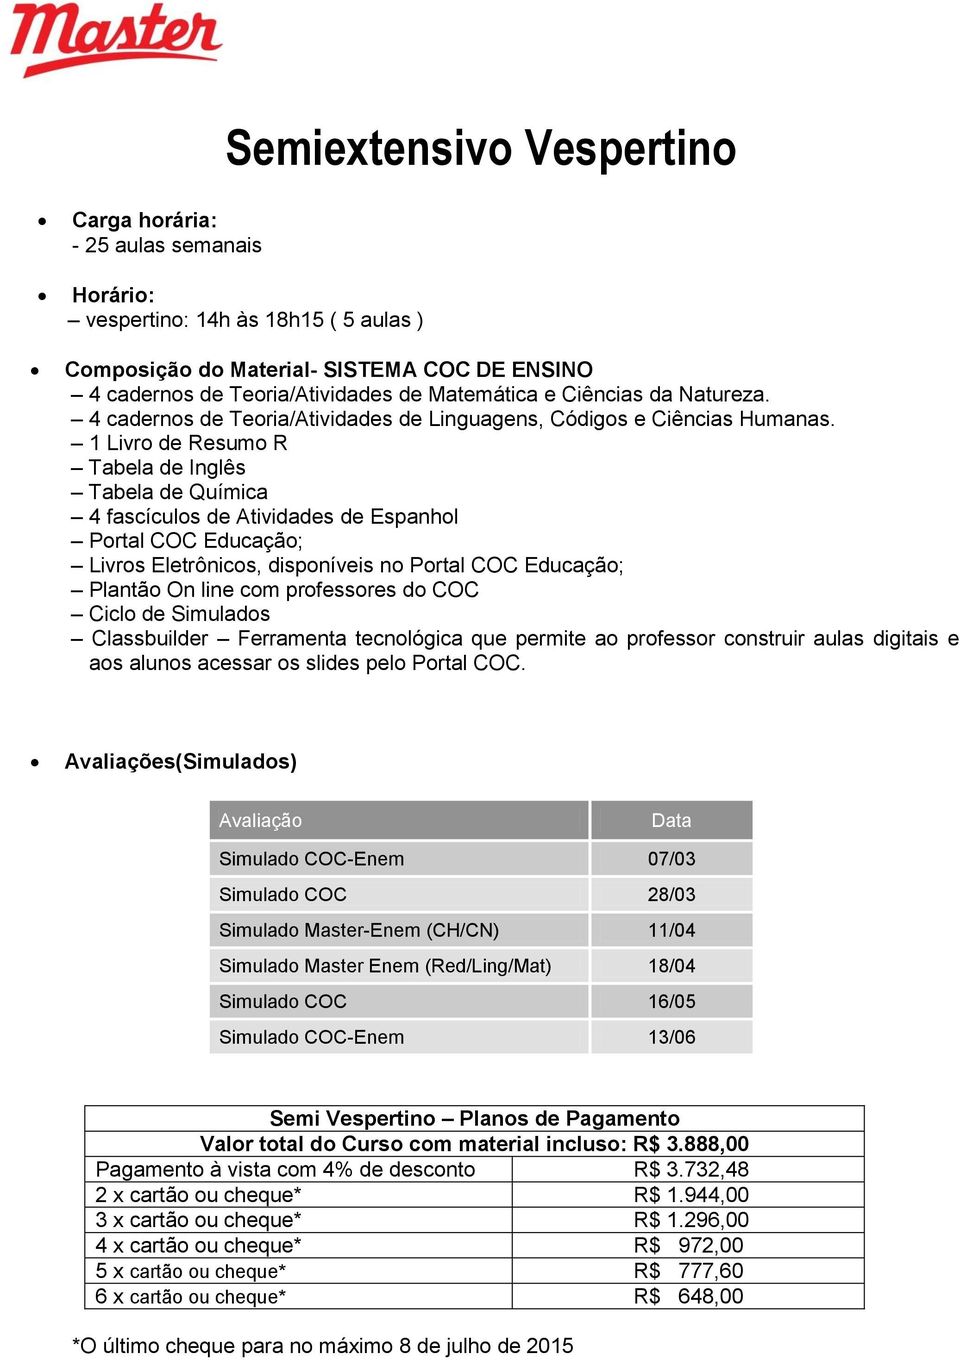 4 fascículos de Atividades de Espanhol Semi Vespertino Planos de Pagamento Valor total do Curso com material incluso: R$ 3.888,00 Pagamento à vista com 4% de desconto R$ 3.